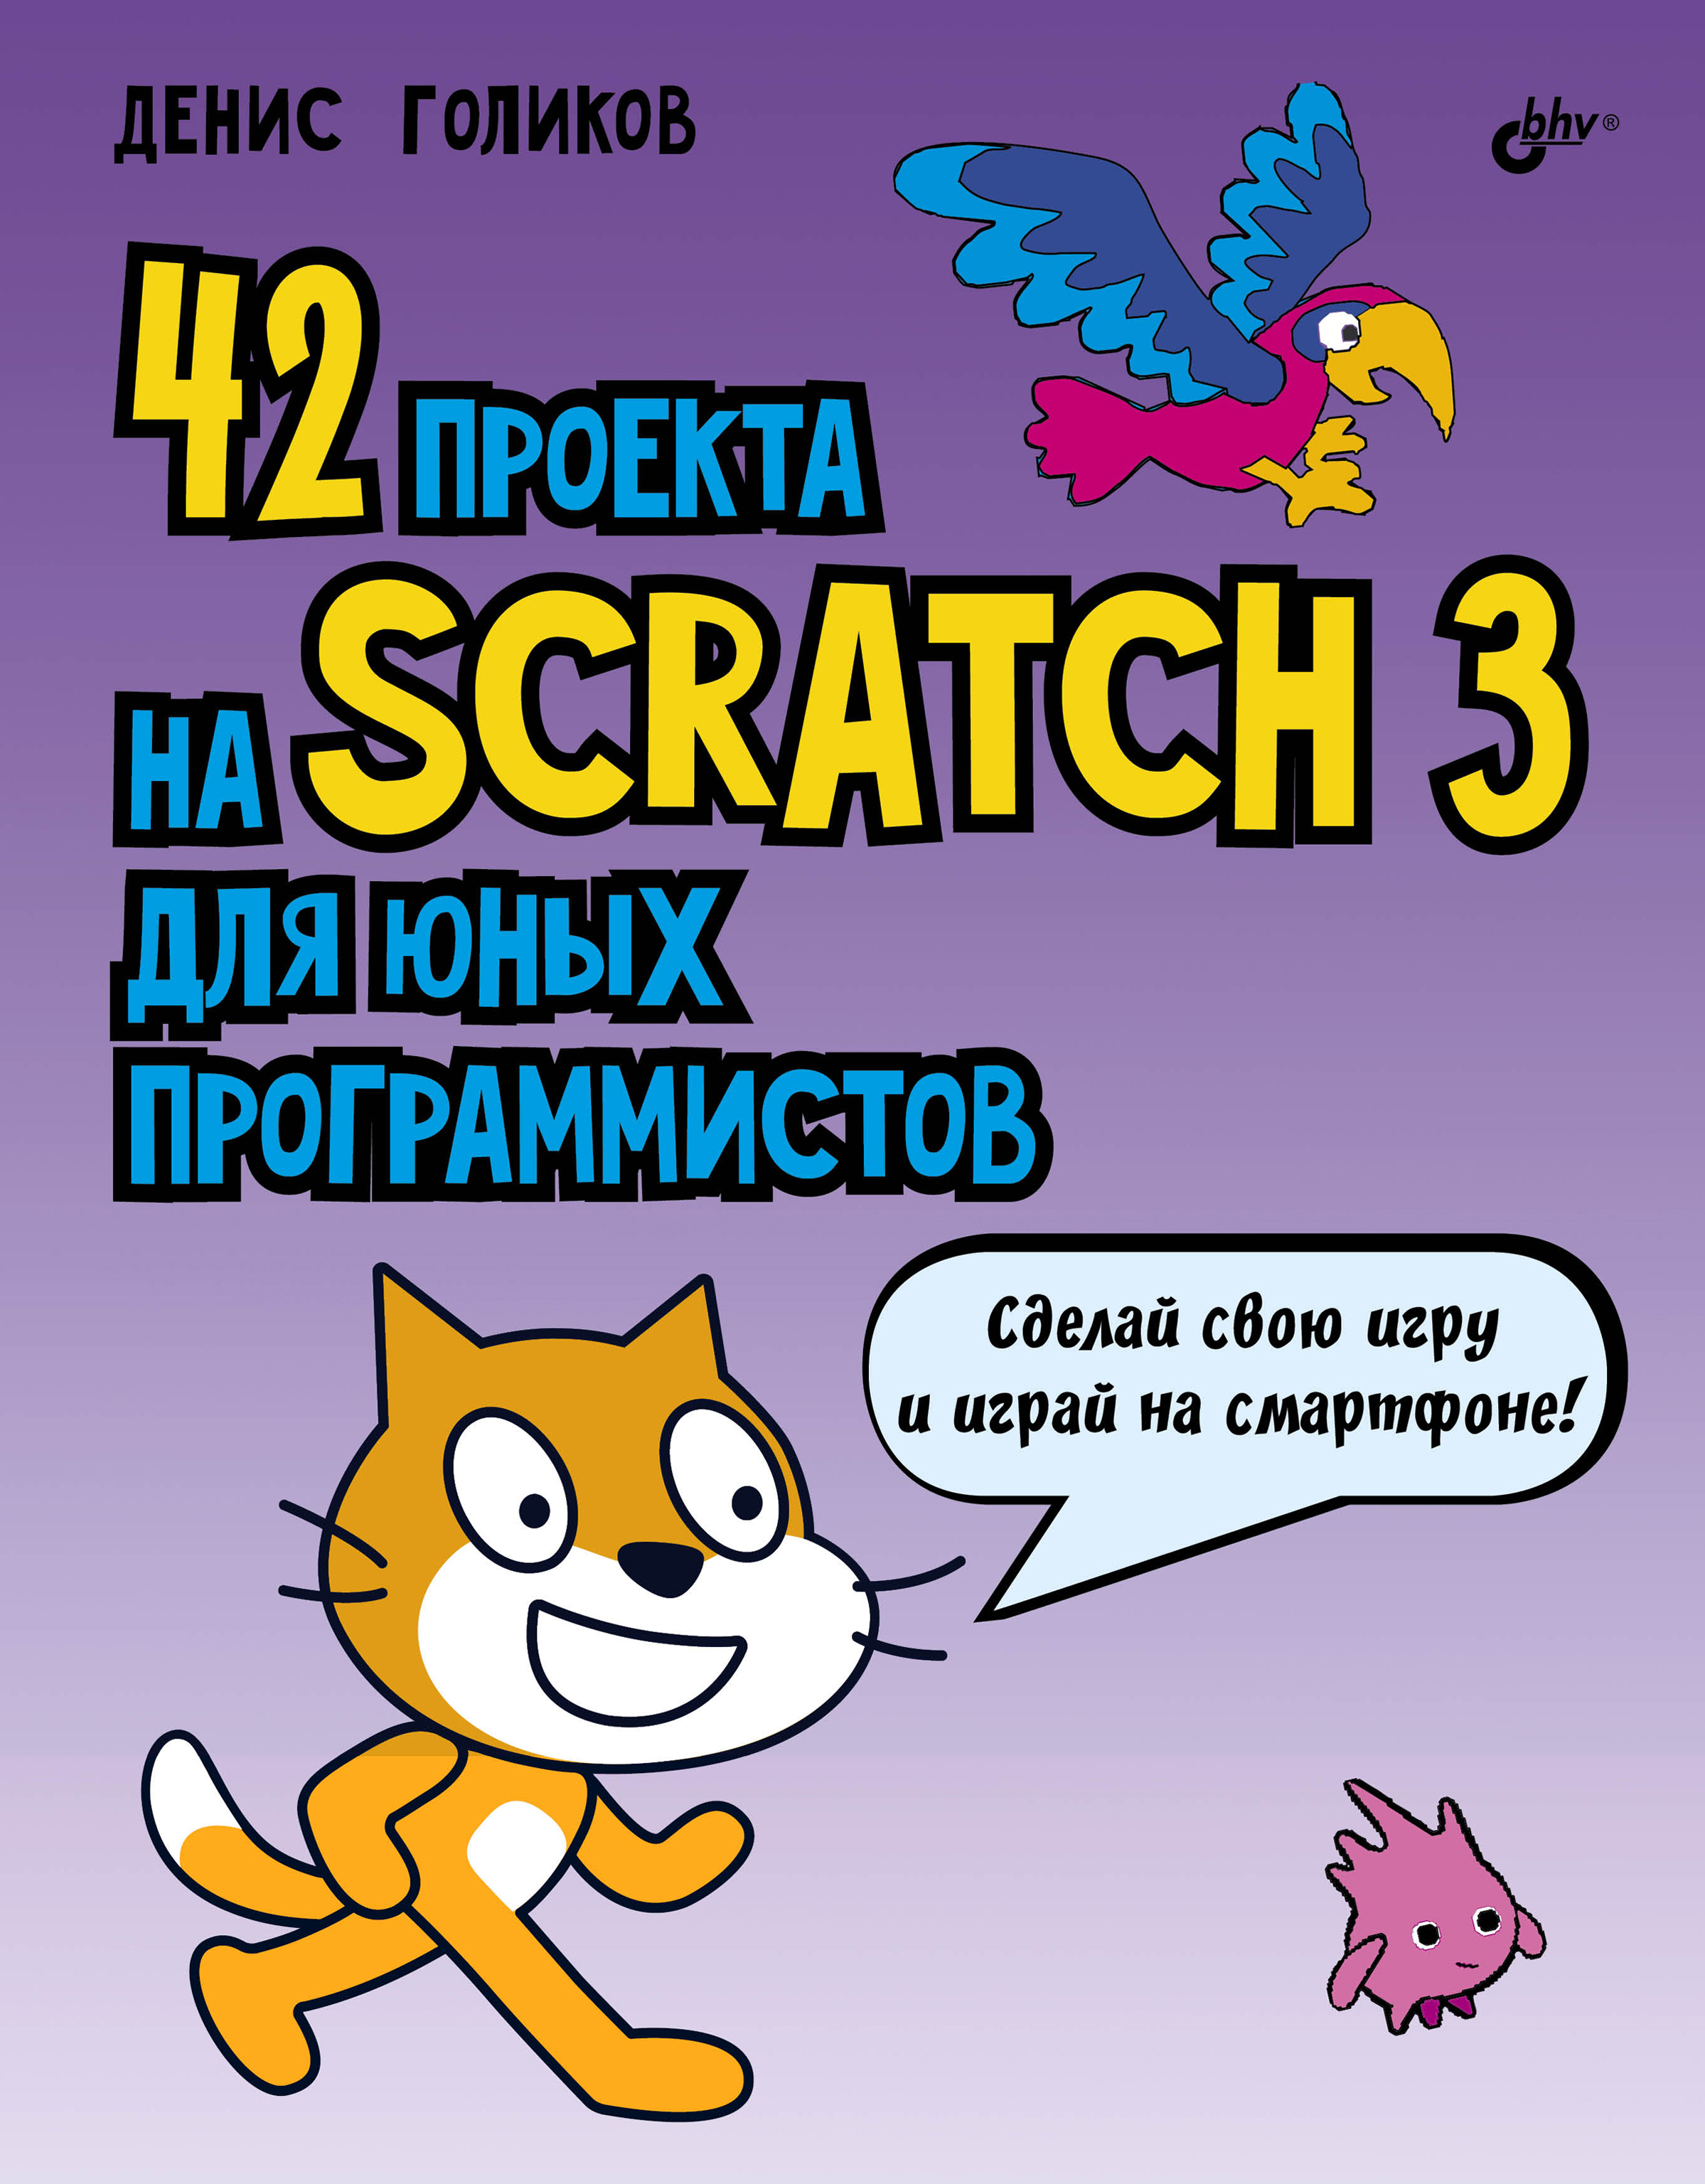 40проектов на Scratch для юных программистов